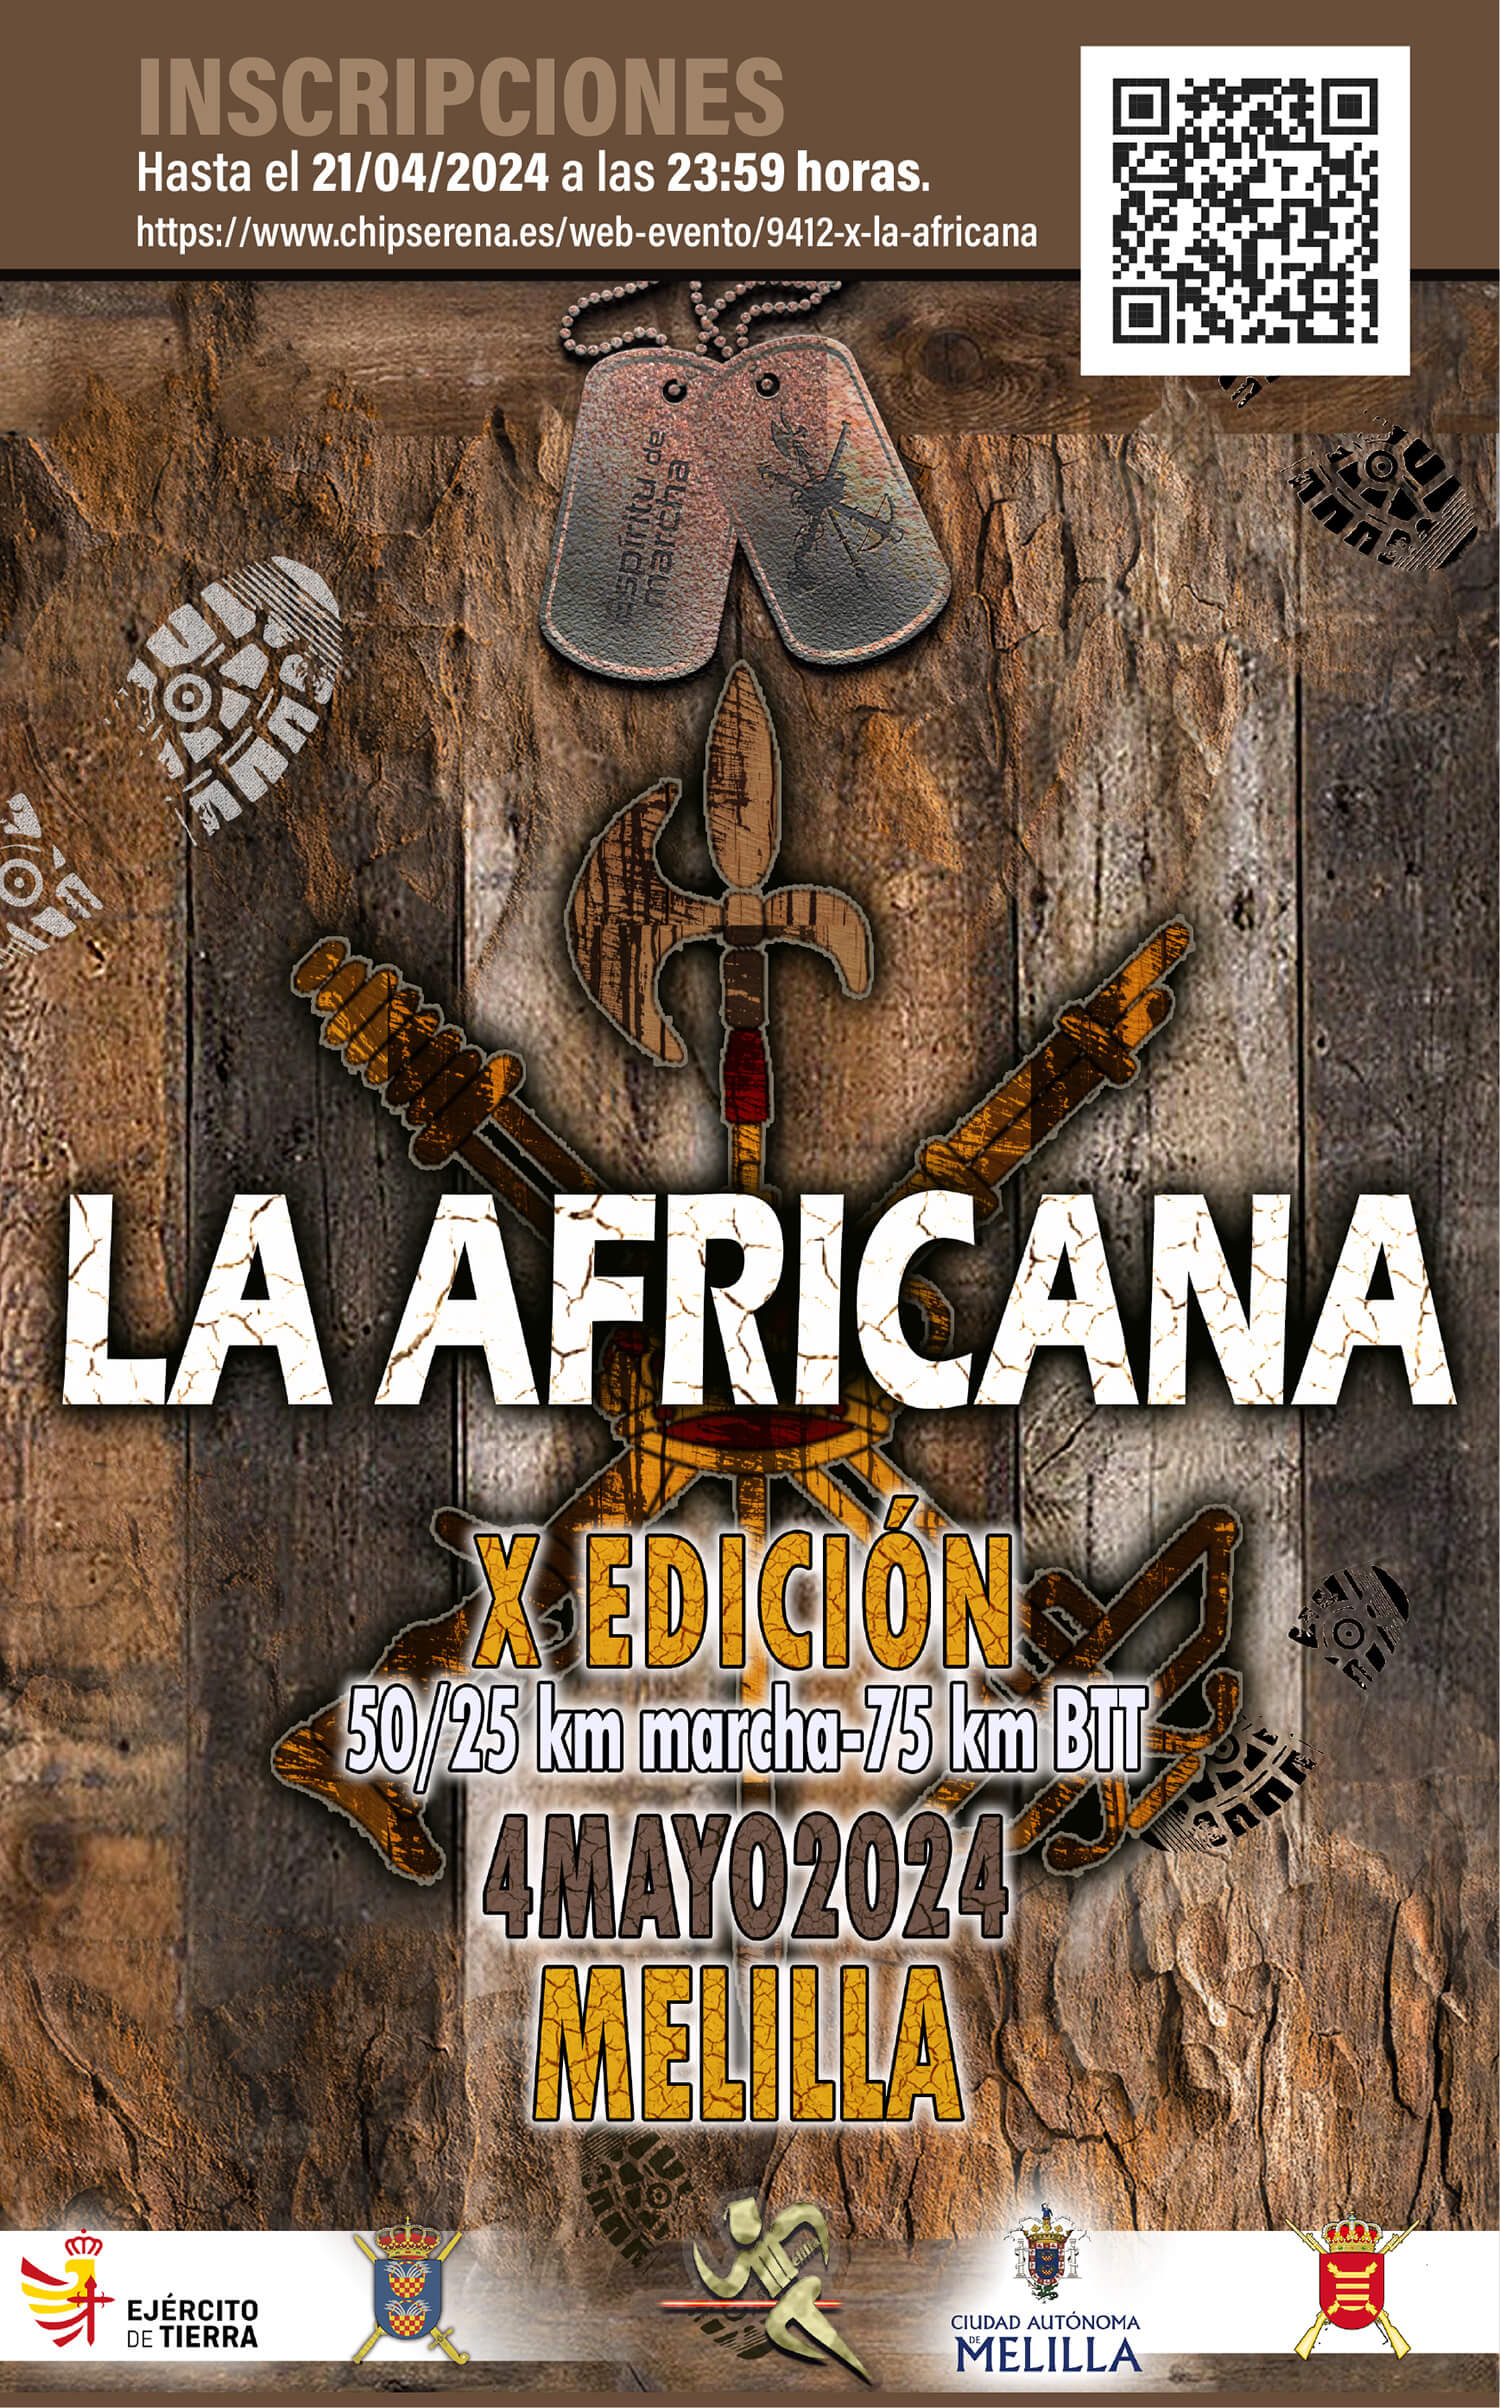 Inscripciones X Carrera Africana de la Legin en Melilla